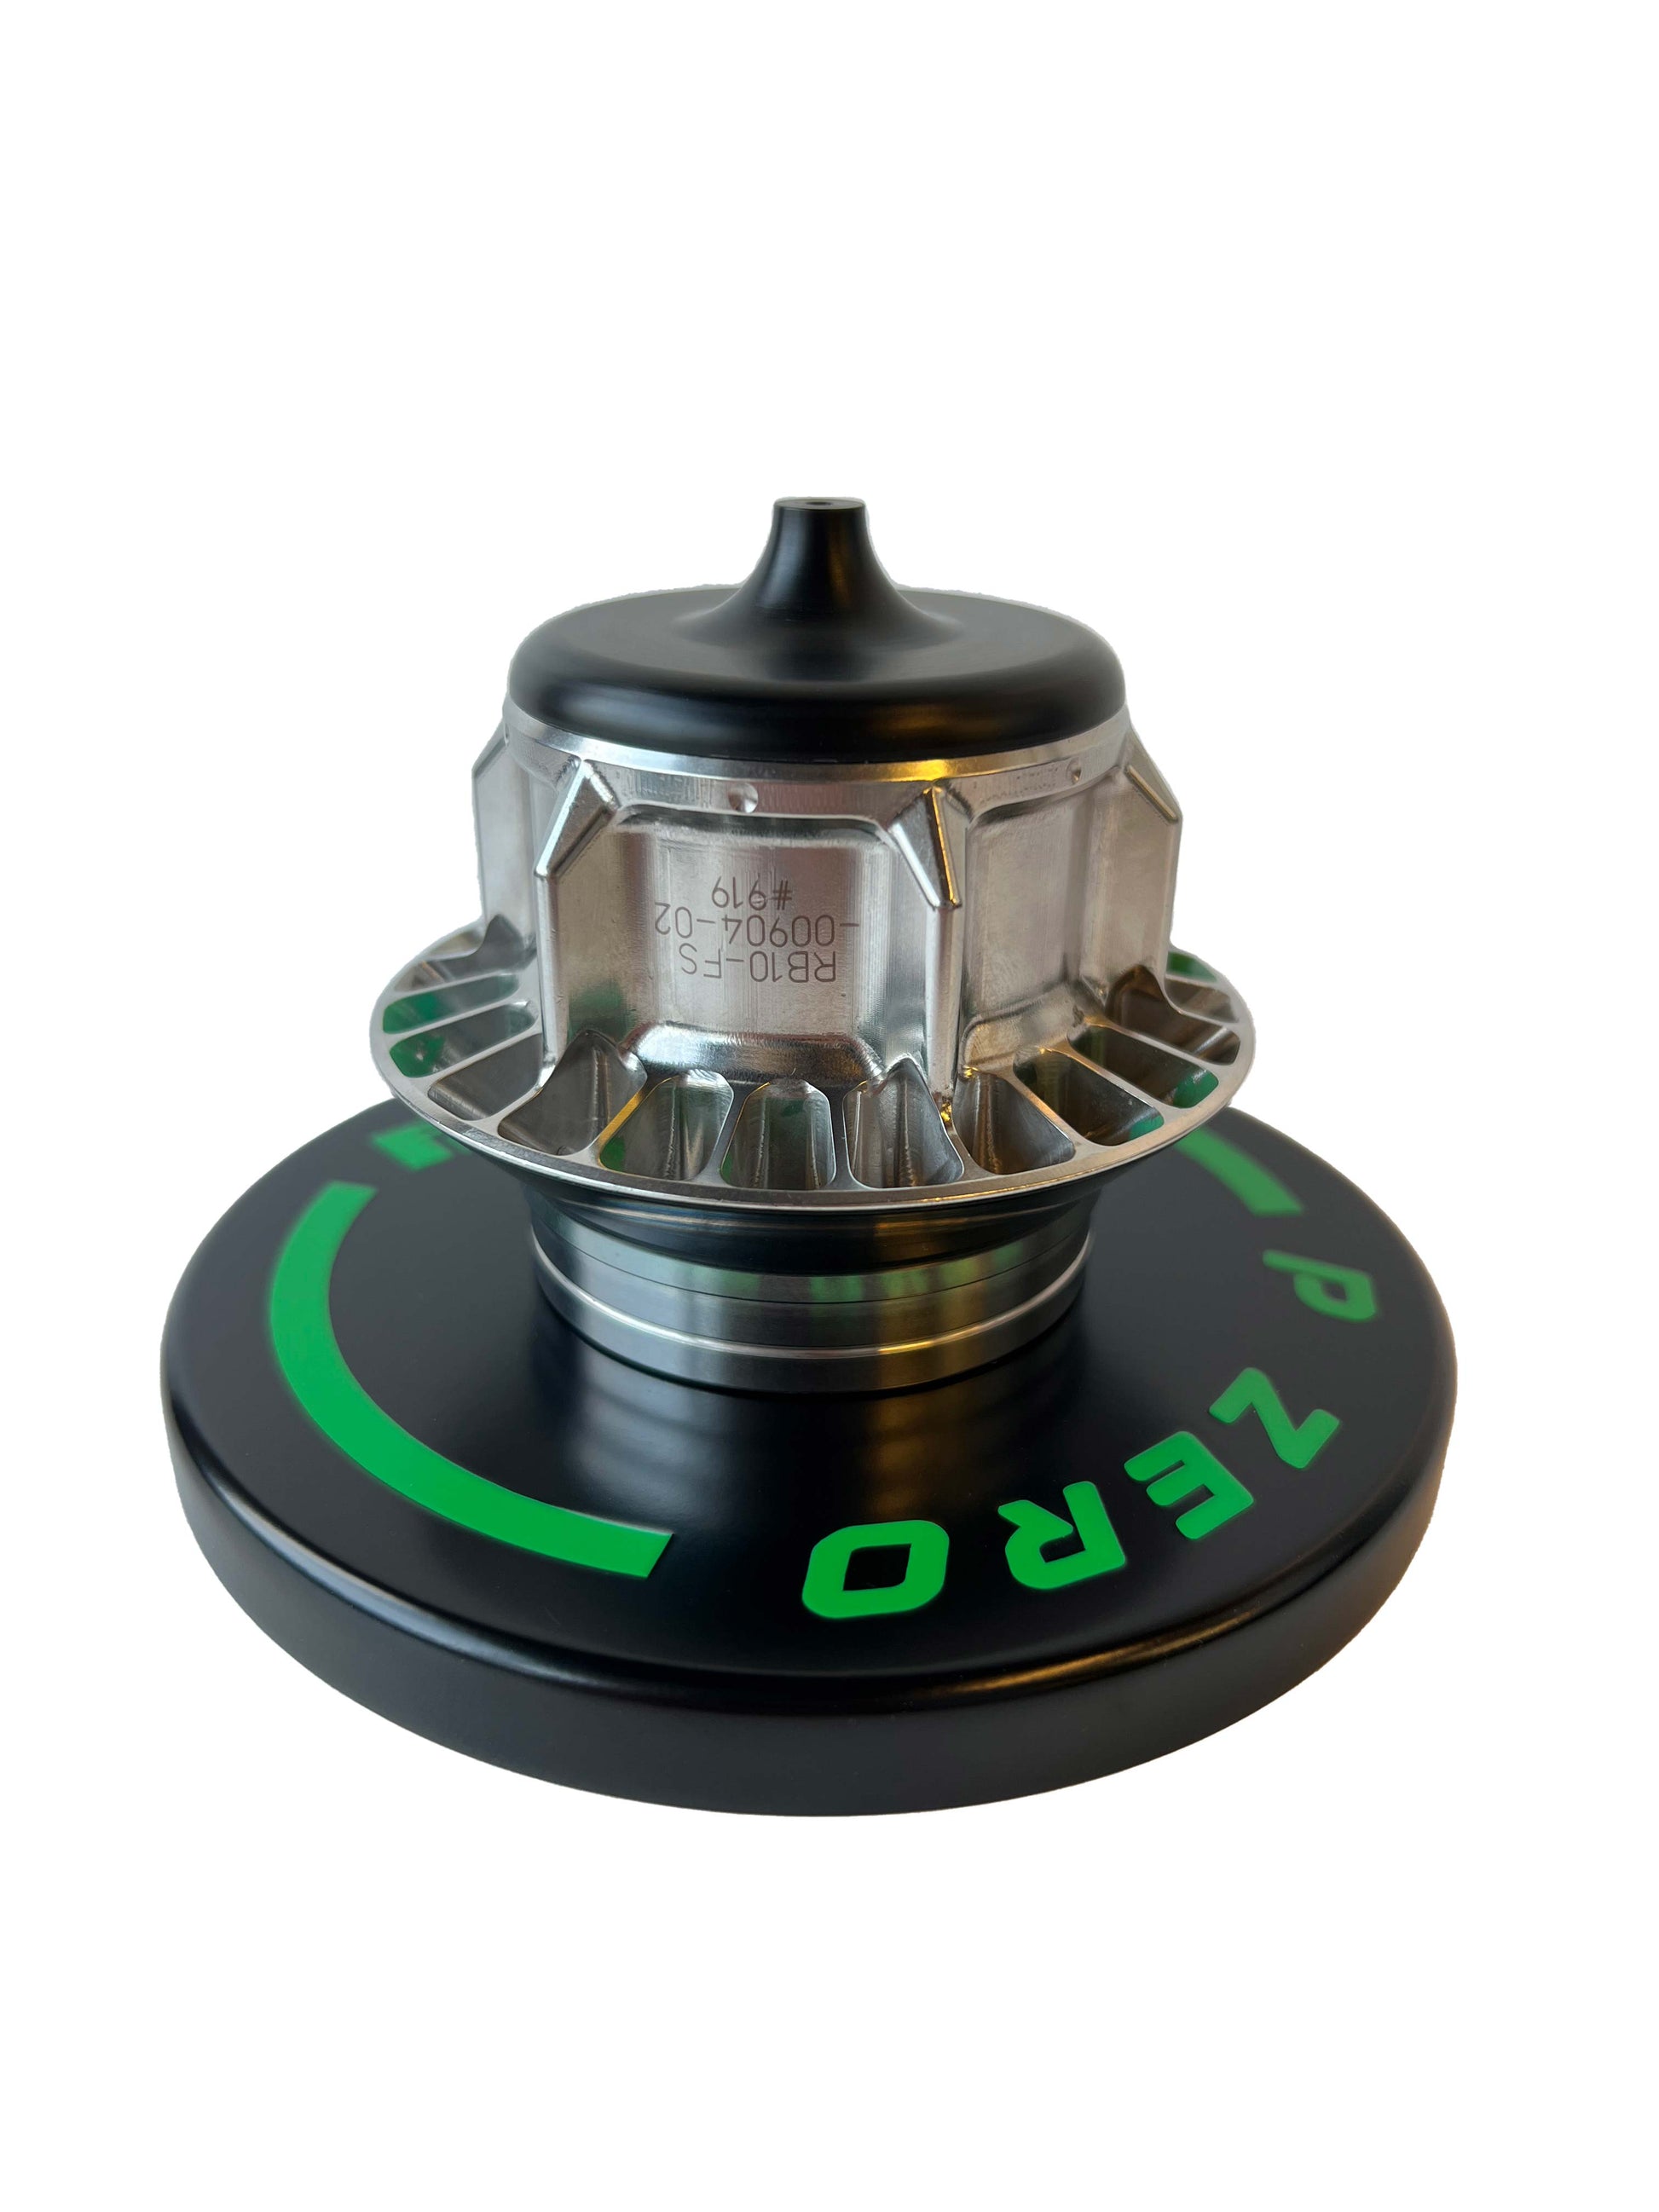 F1 wheel nut on a black base with green Pirelli logo